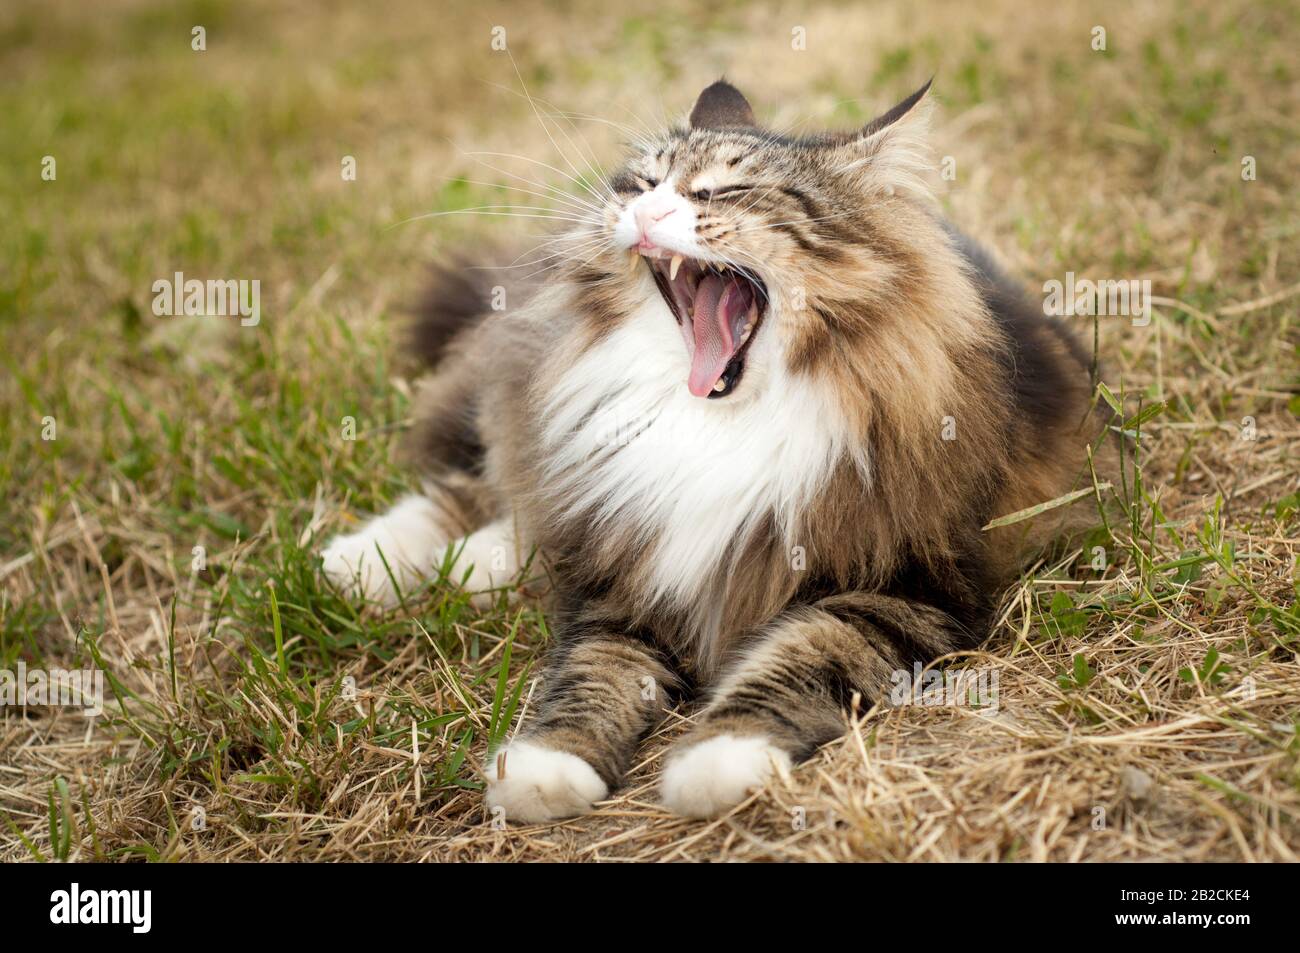 Nahaufnahme einer gähnenden norwegischen Waldkatze auf dem Gras outdoor.calm und entspannen. Lustige Katze Stockfoto